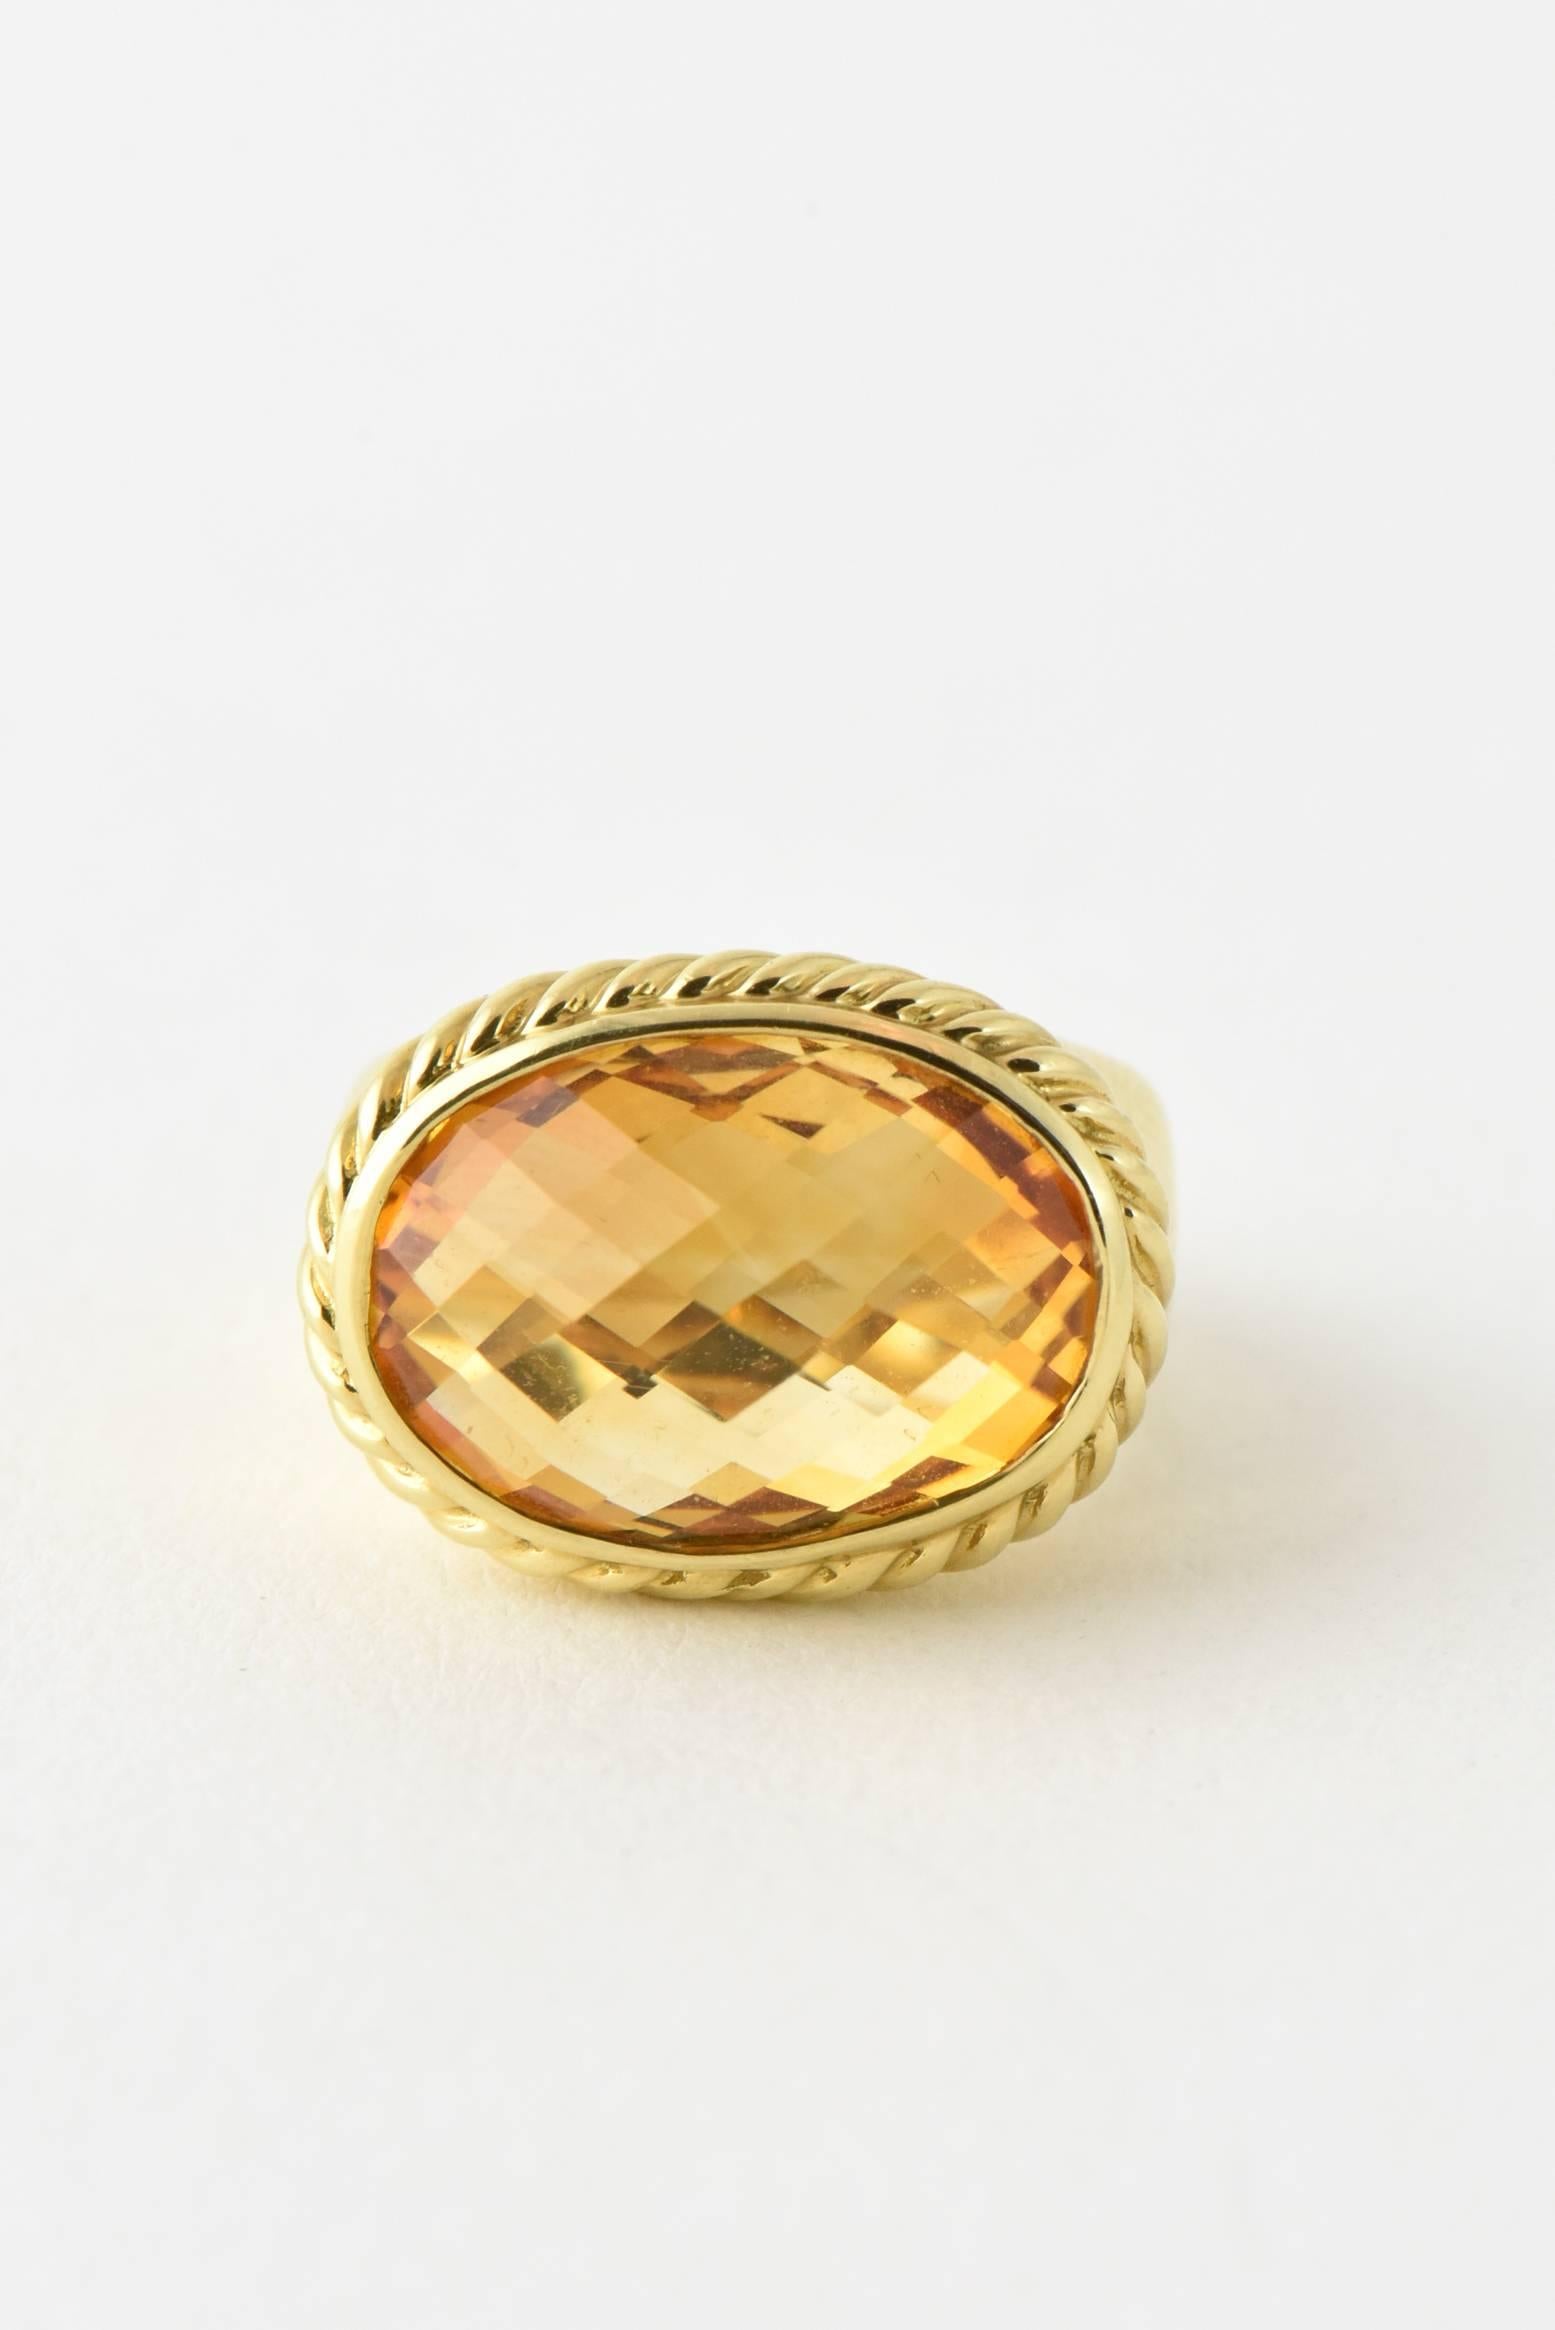 Yurman Citrine Signature Gold Ring In Good Condition For Sale In Miami Beach, FL